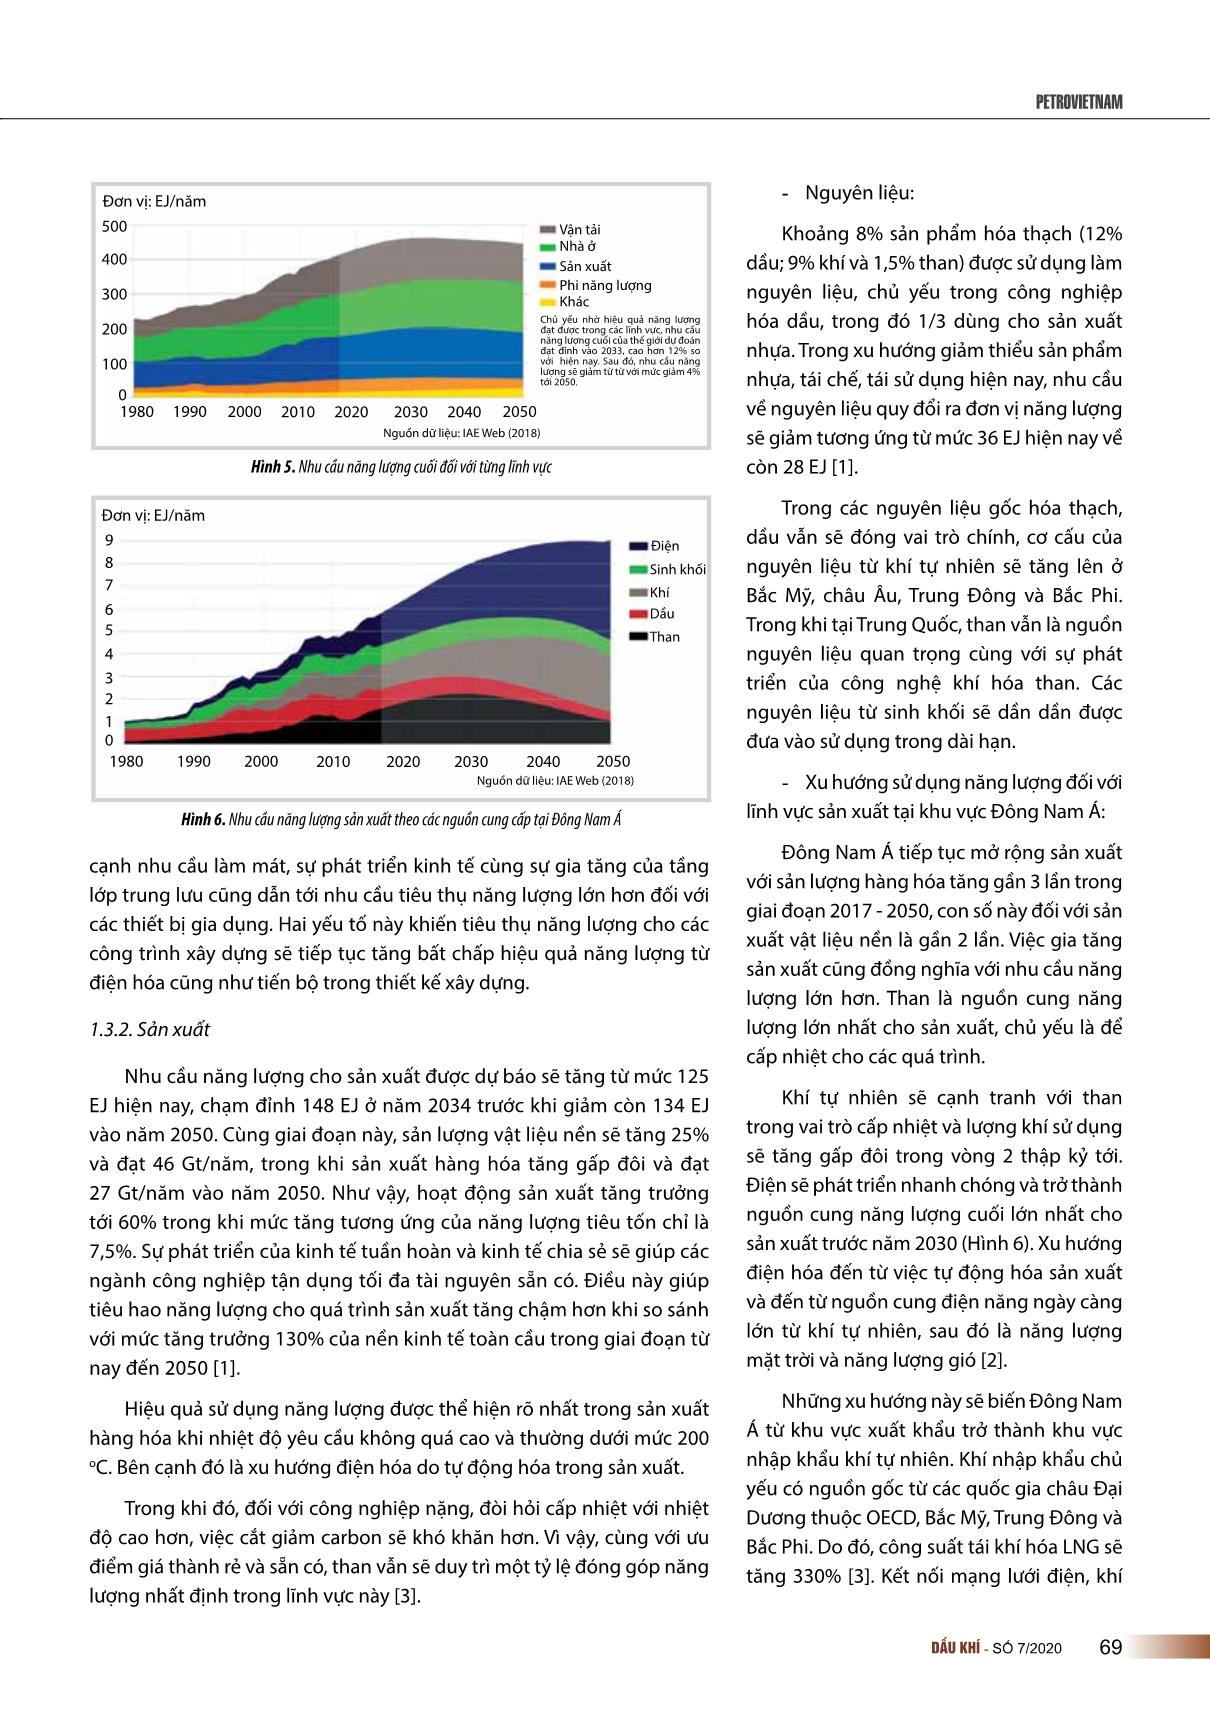 Dự báo xu hướng chuyển dịch năng lượng của thế giới đến năm 2050 trang 3